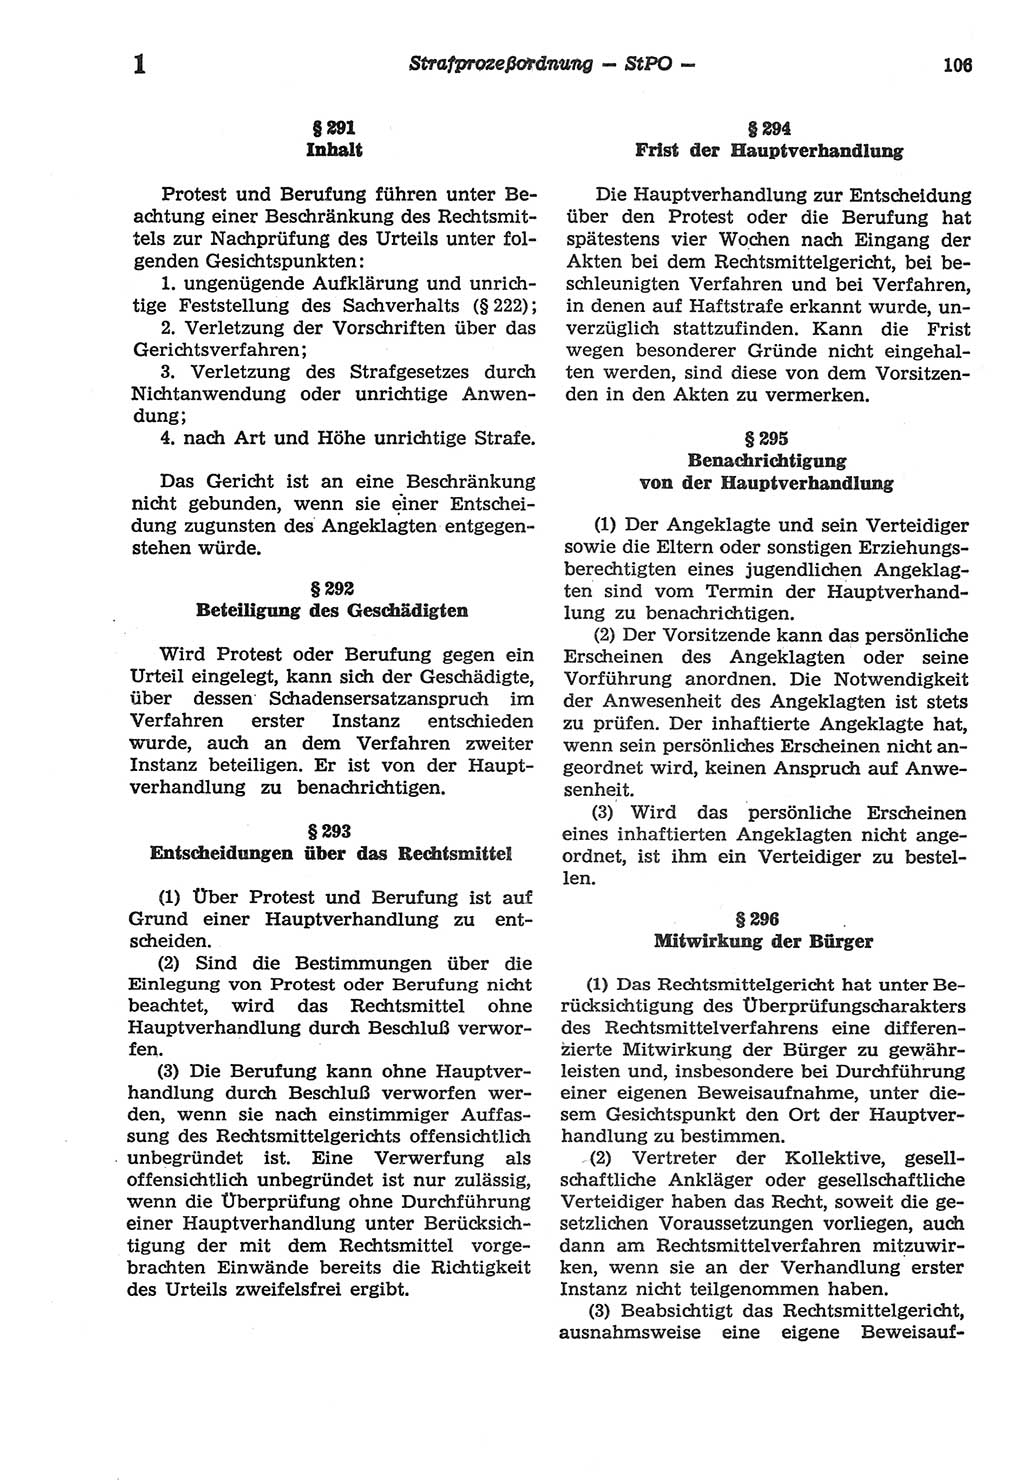 Strafprozeßordnung (StPO) der Deutschen Demokratischen Republik (DDR) sowie angrenzende Gesetze und Bestimmungen 1977, Seite 106 (StPO DDR Ges. Best. 1977, S. 106)